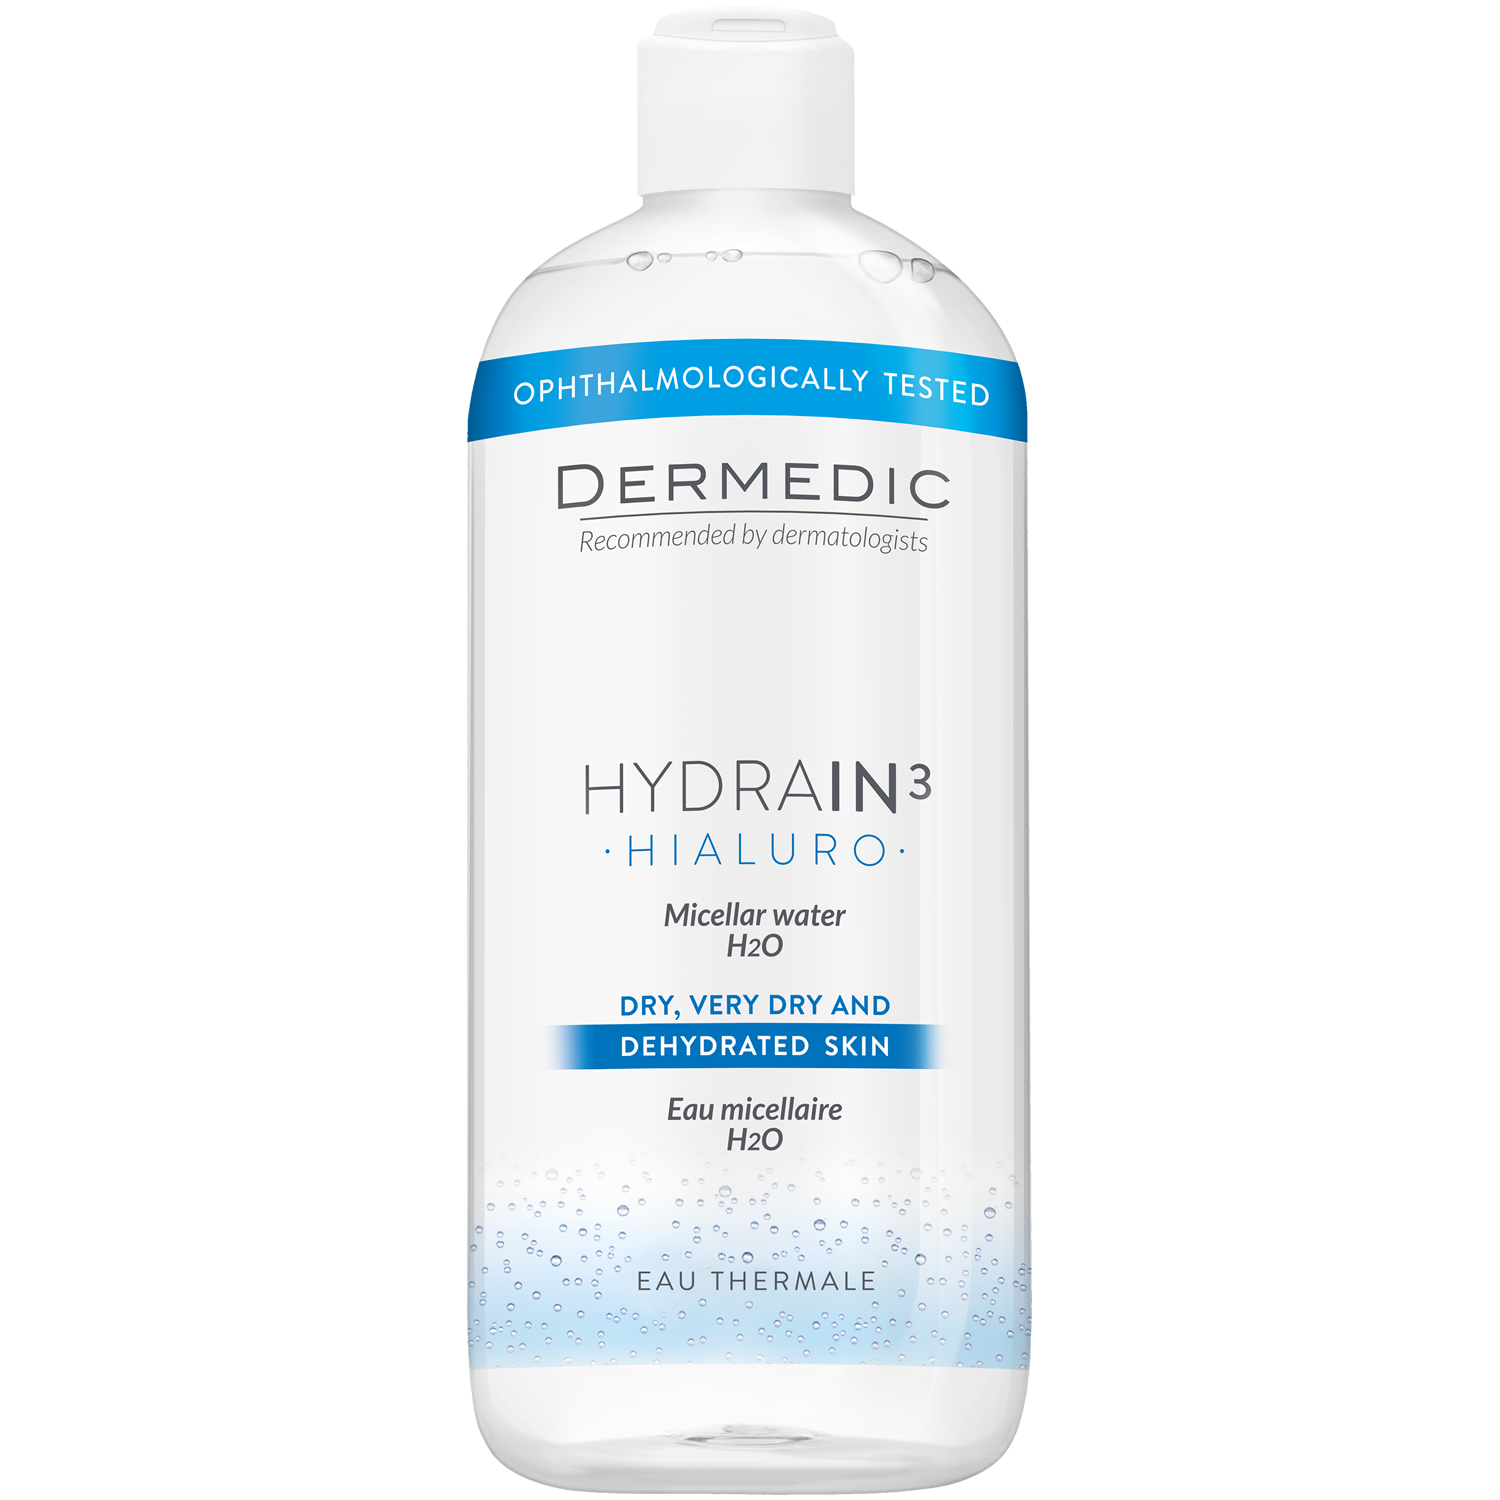 Dermedic Hydrain3 Hialuro мицеллярная вода H2O для лица, 500 мл dermedic hydrain3 hialuro мицеллярная вода h2o 200 мл